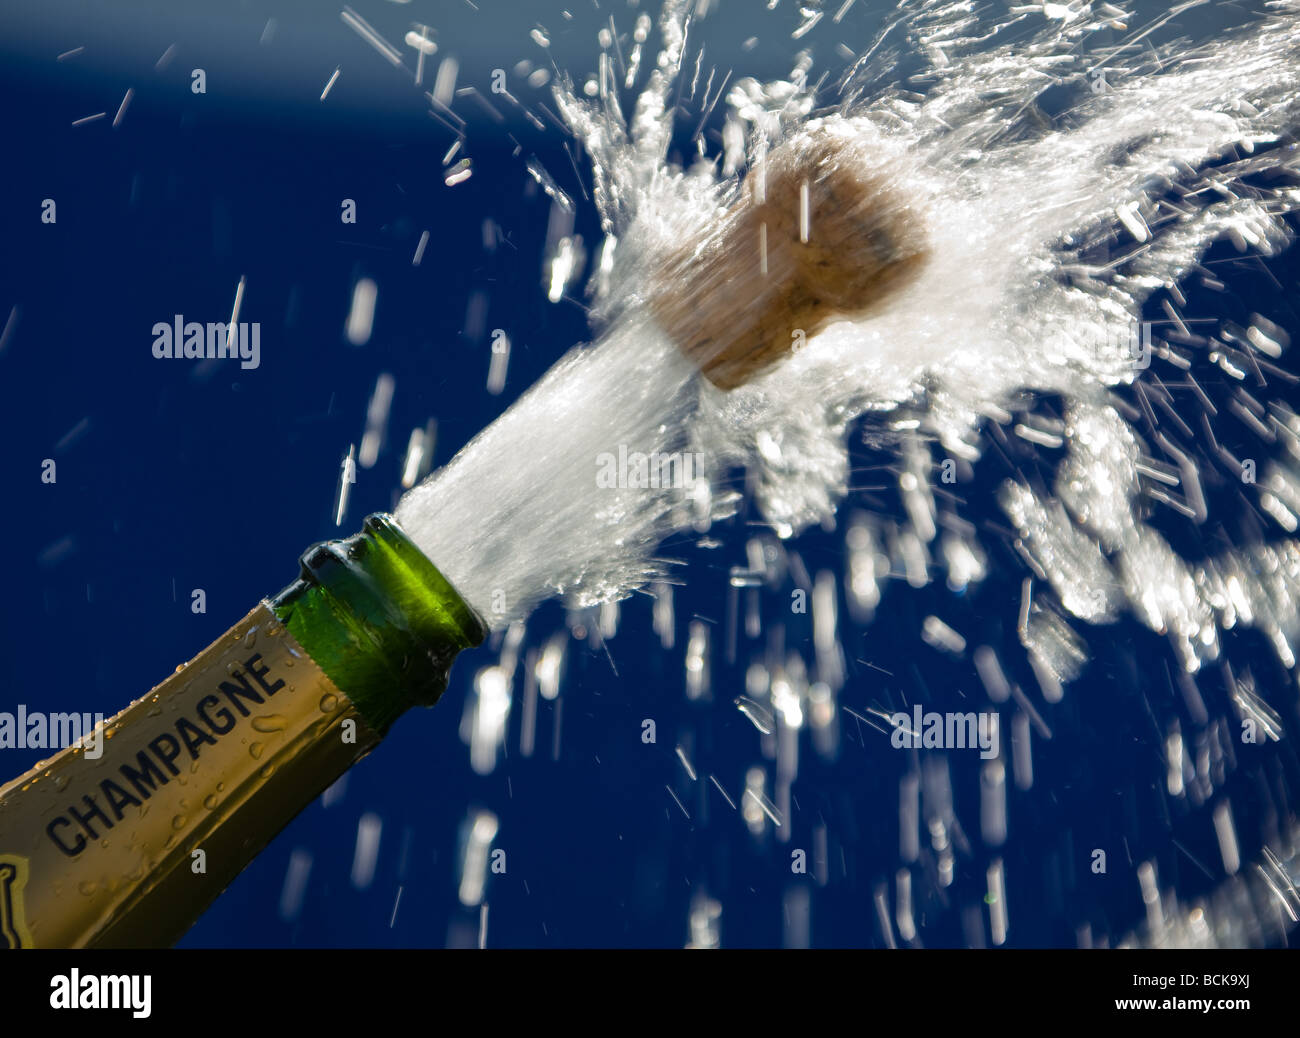 Destapa el corcho de una botella de champán abierta Fotografía de stock -  Alamy